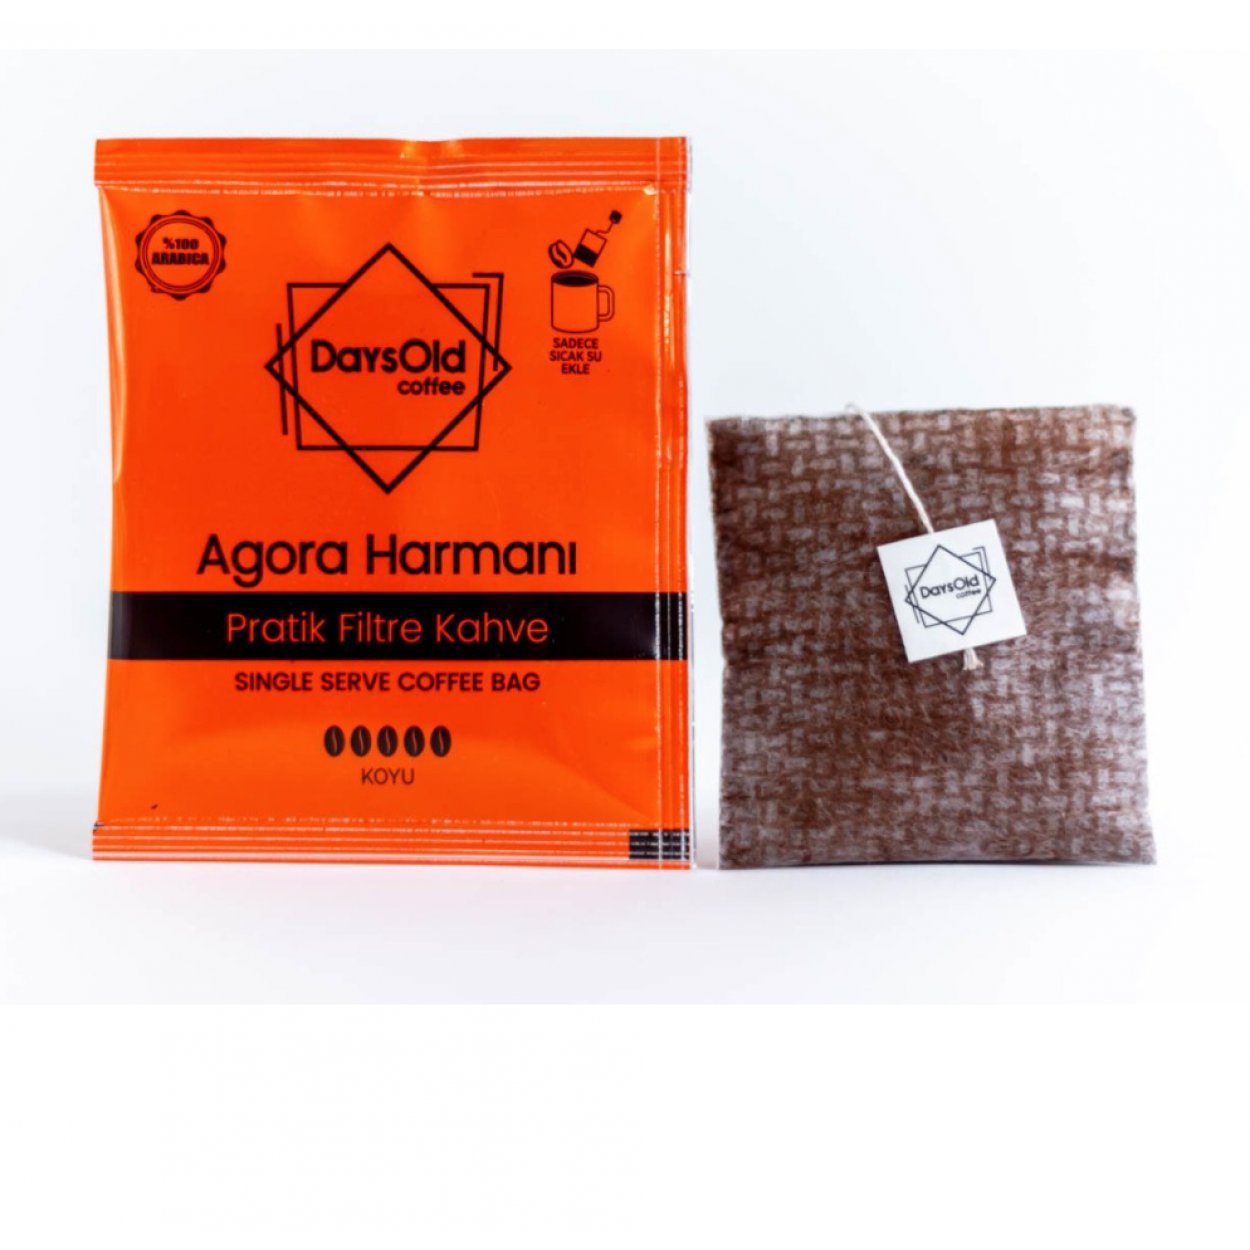 923430-days-old-coffee-agora-harmani